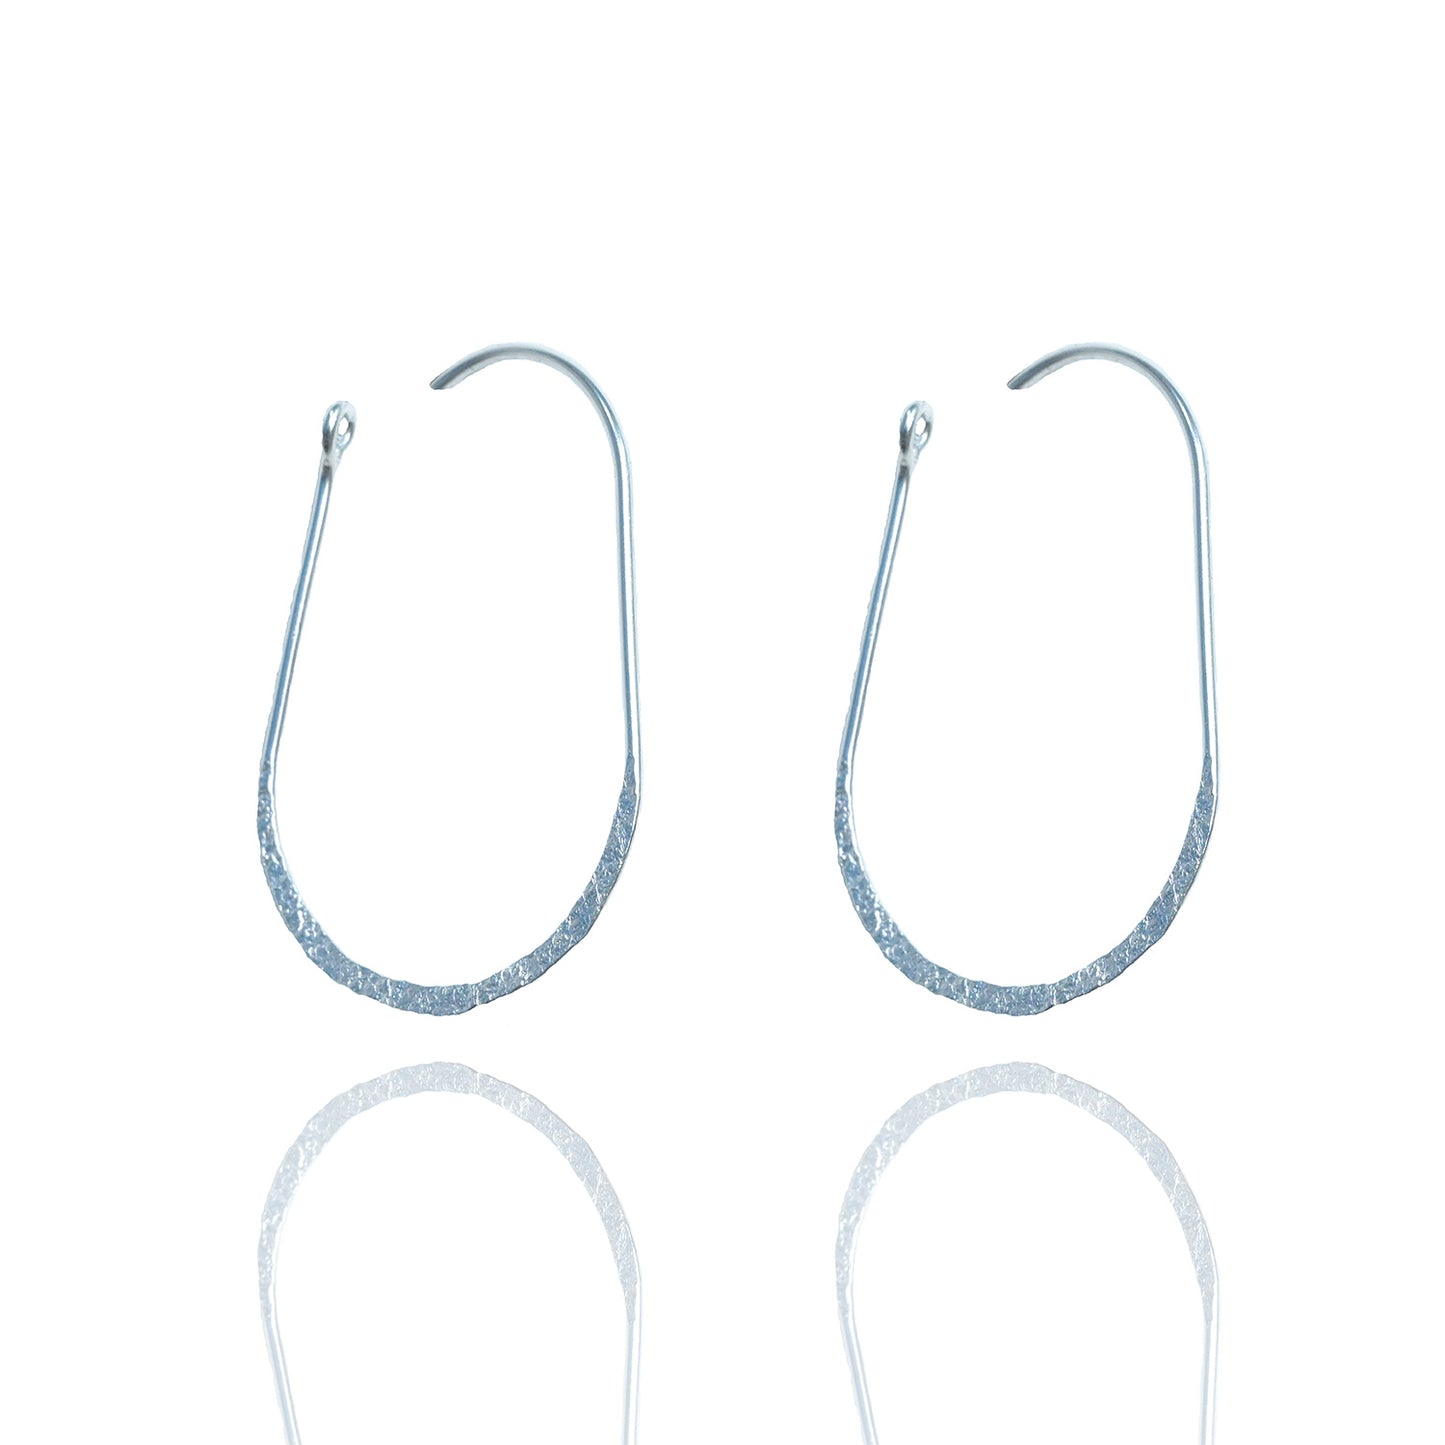 Wired Hoop Earrings for Women